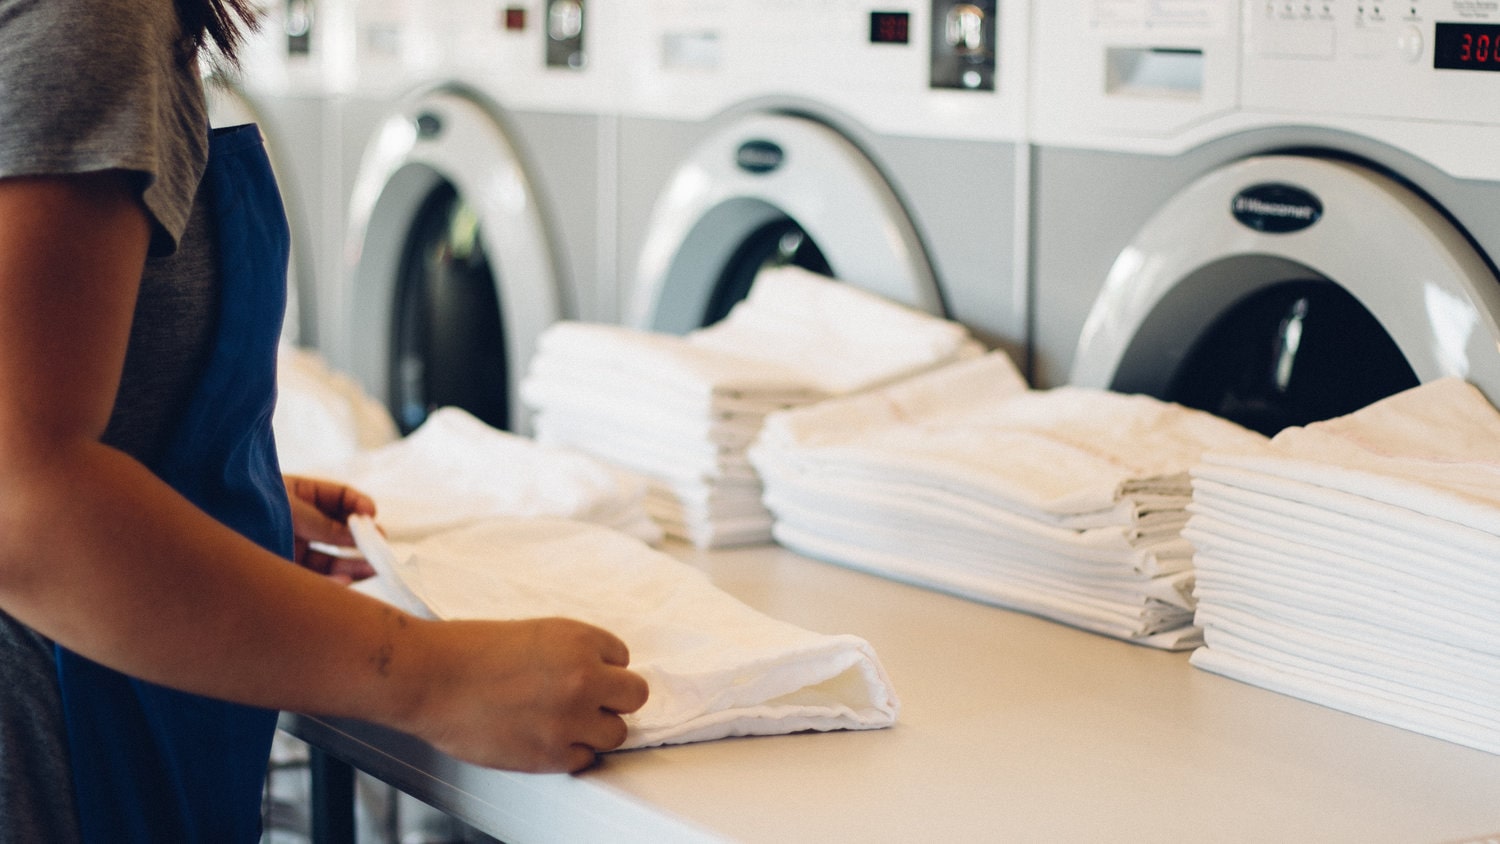 Chương trình khuyến mãi tháng 10 của dịch vụ giặt là cao cấp Japan Laundry